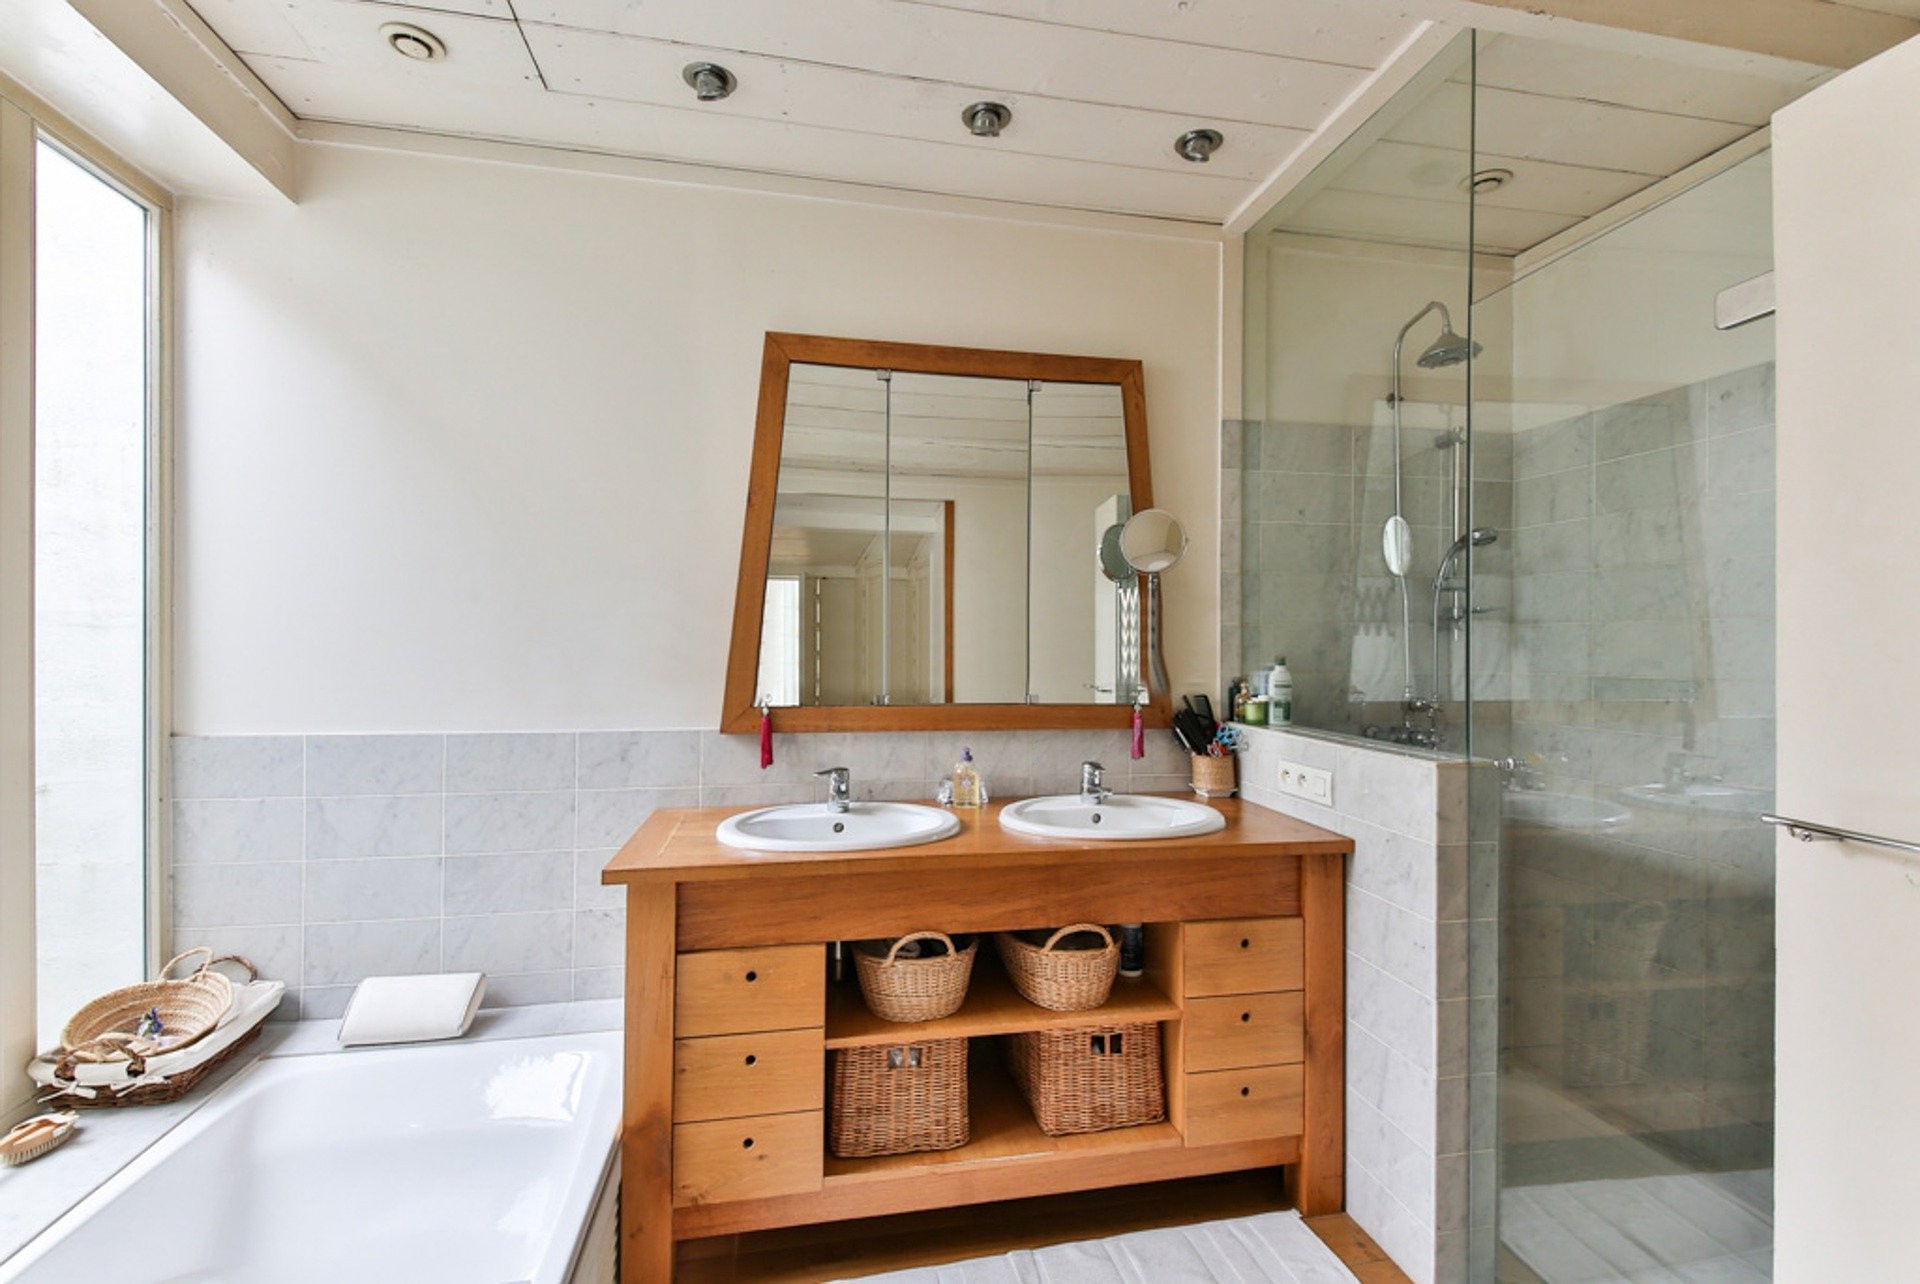 Utiliser un sauve-savon dans la salle de bain + Tuto DIY